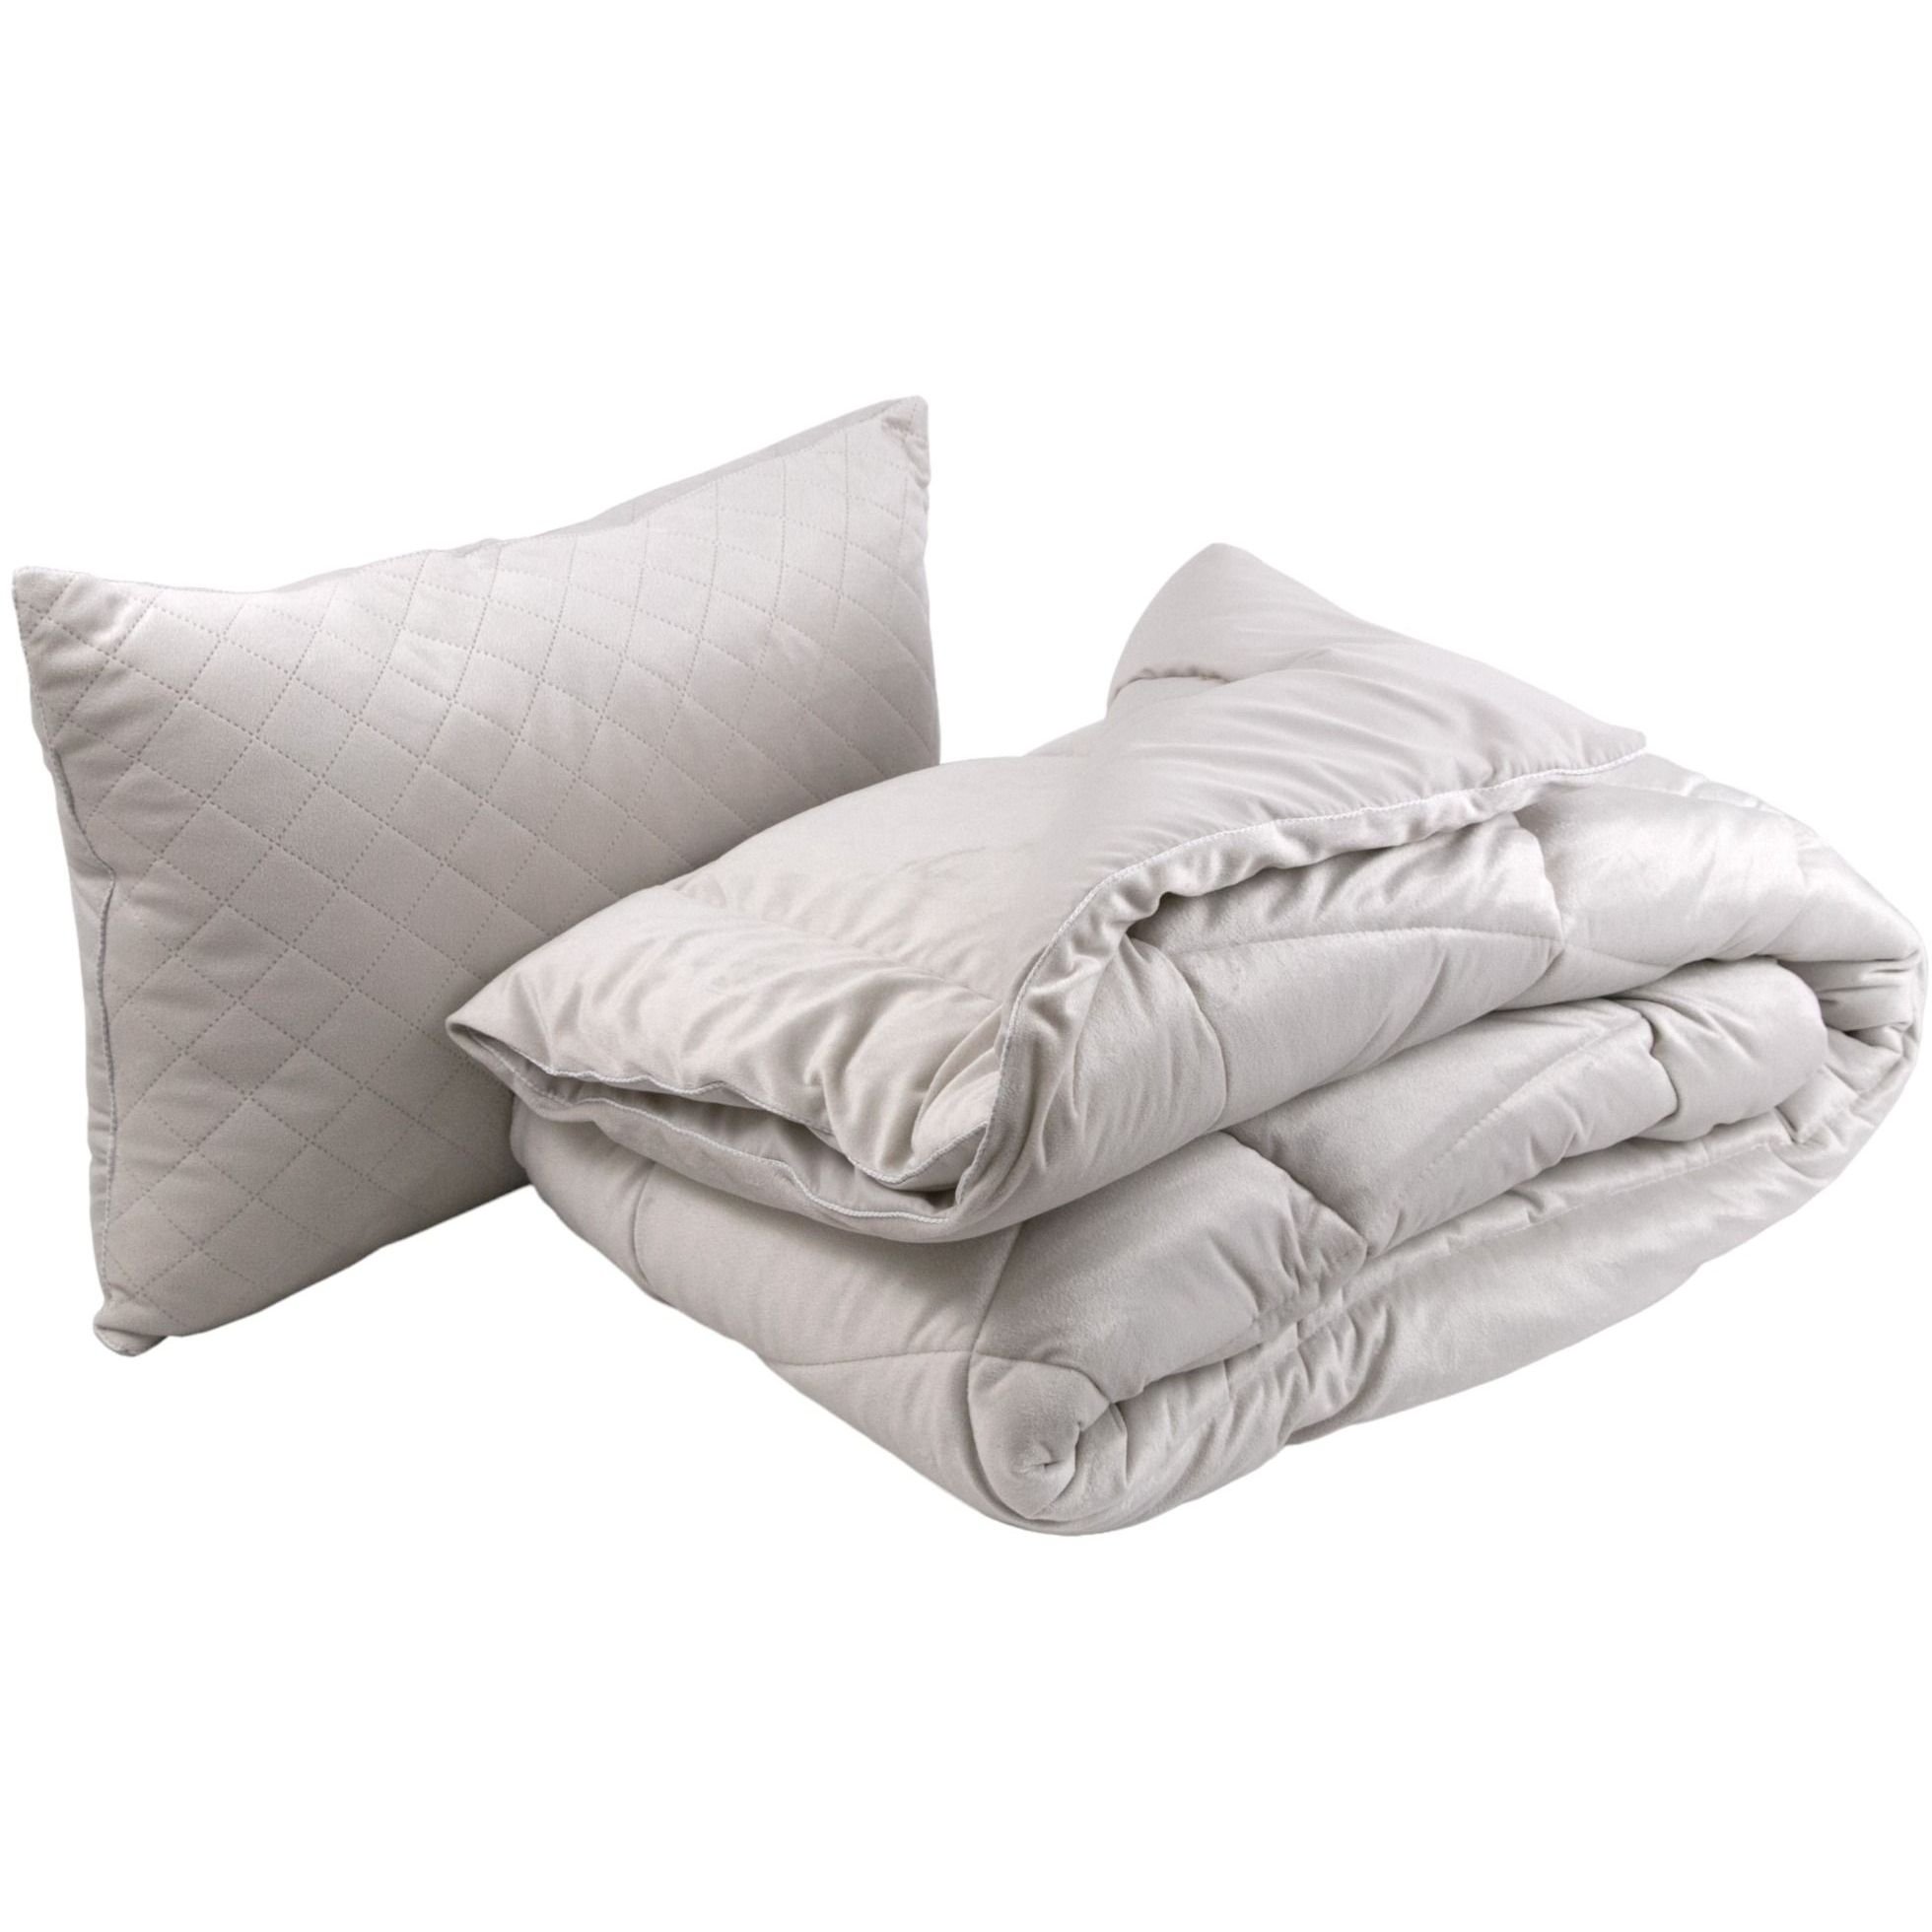 Набор силиконовый Руно Soft Pearl, бежевый: одеяло, 205х140 см + подушка, 50х70 см (924.55_Soft Pearl) - фото 1